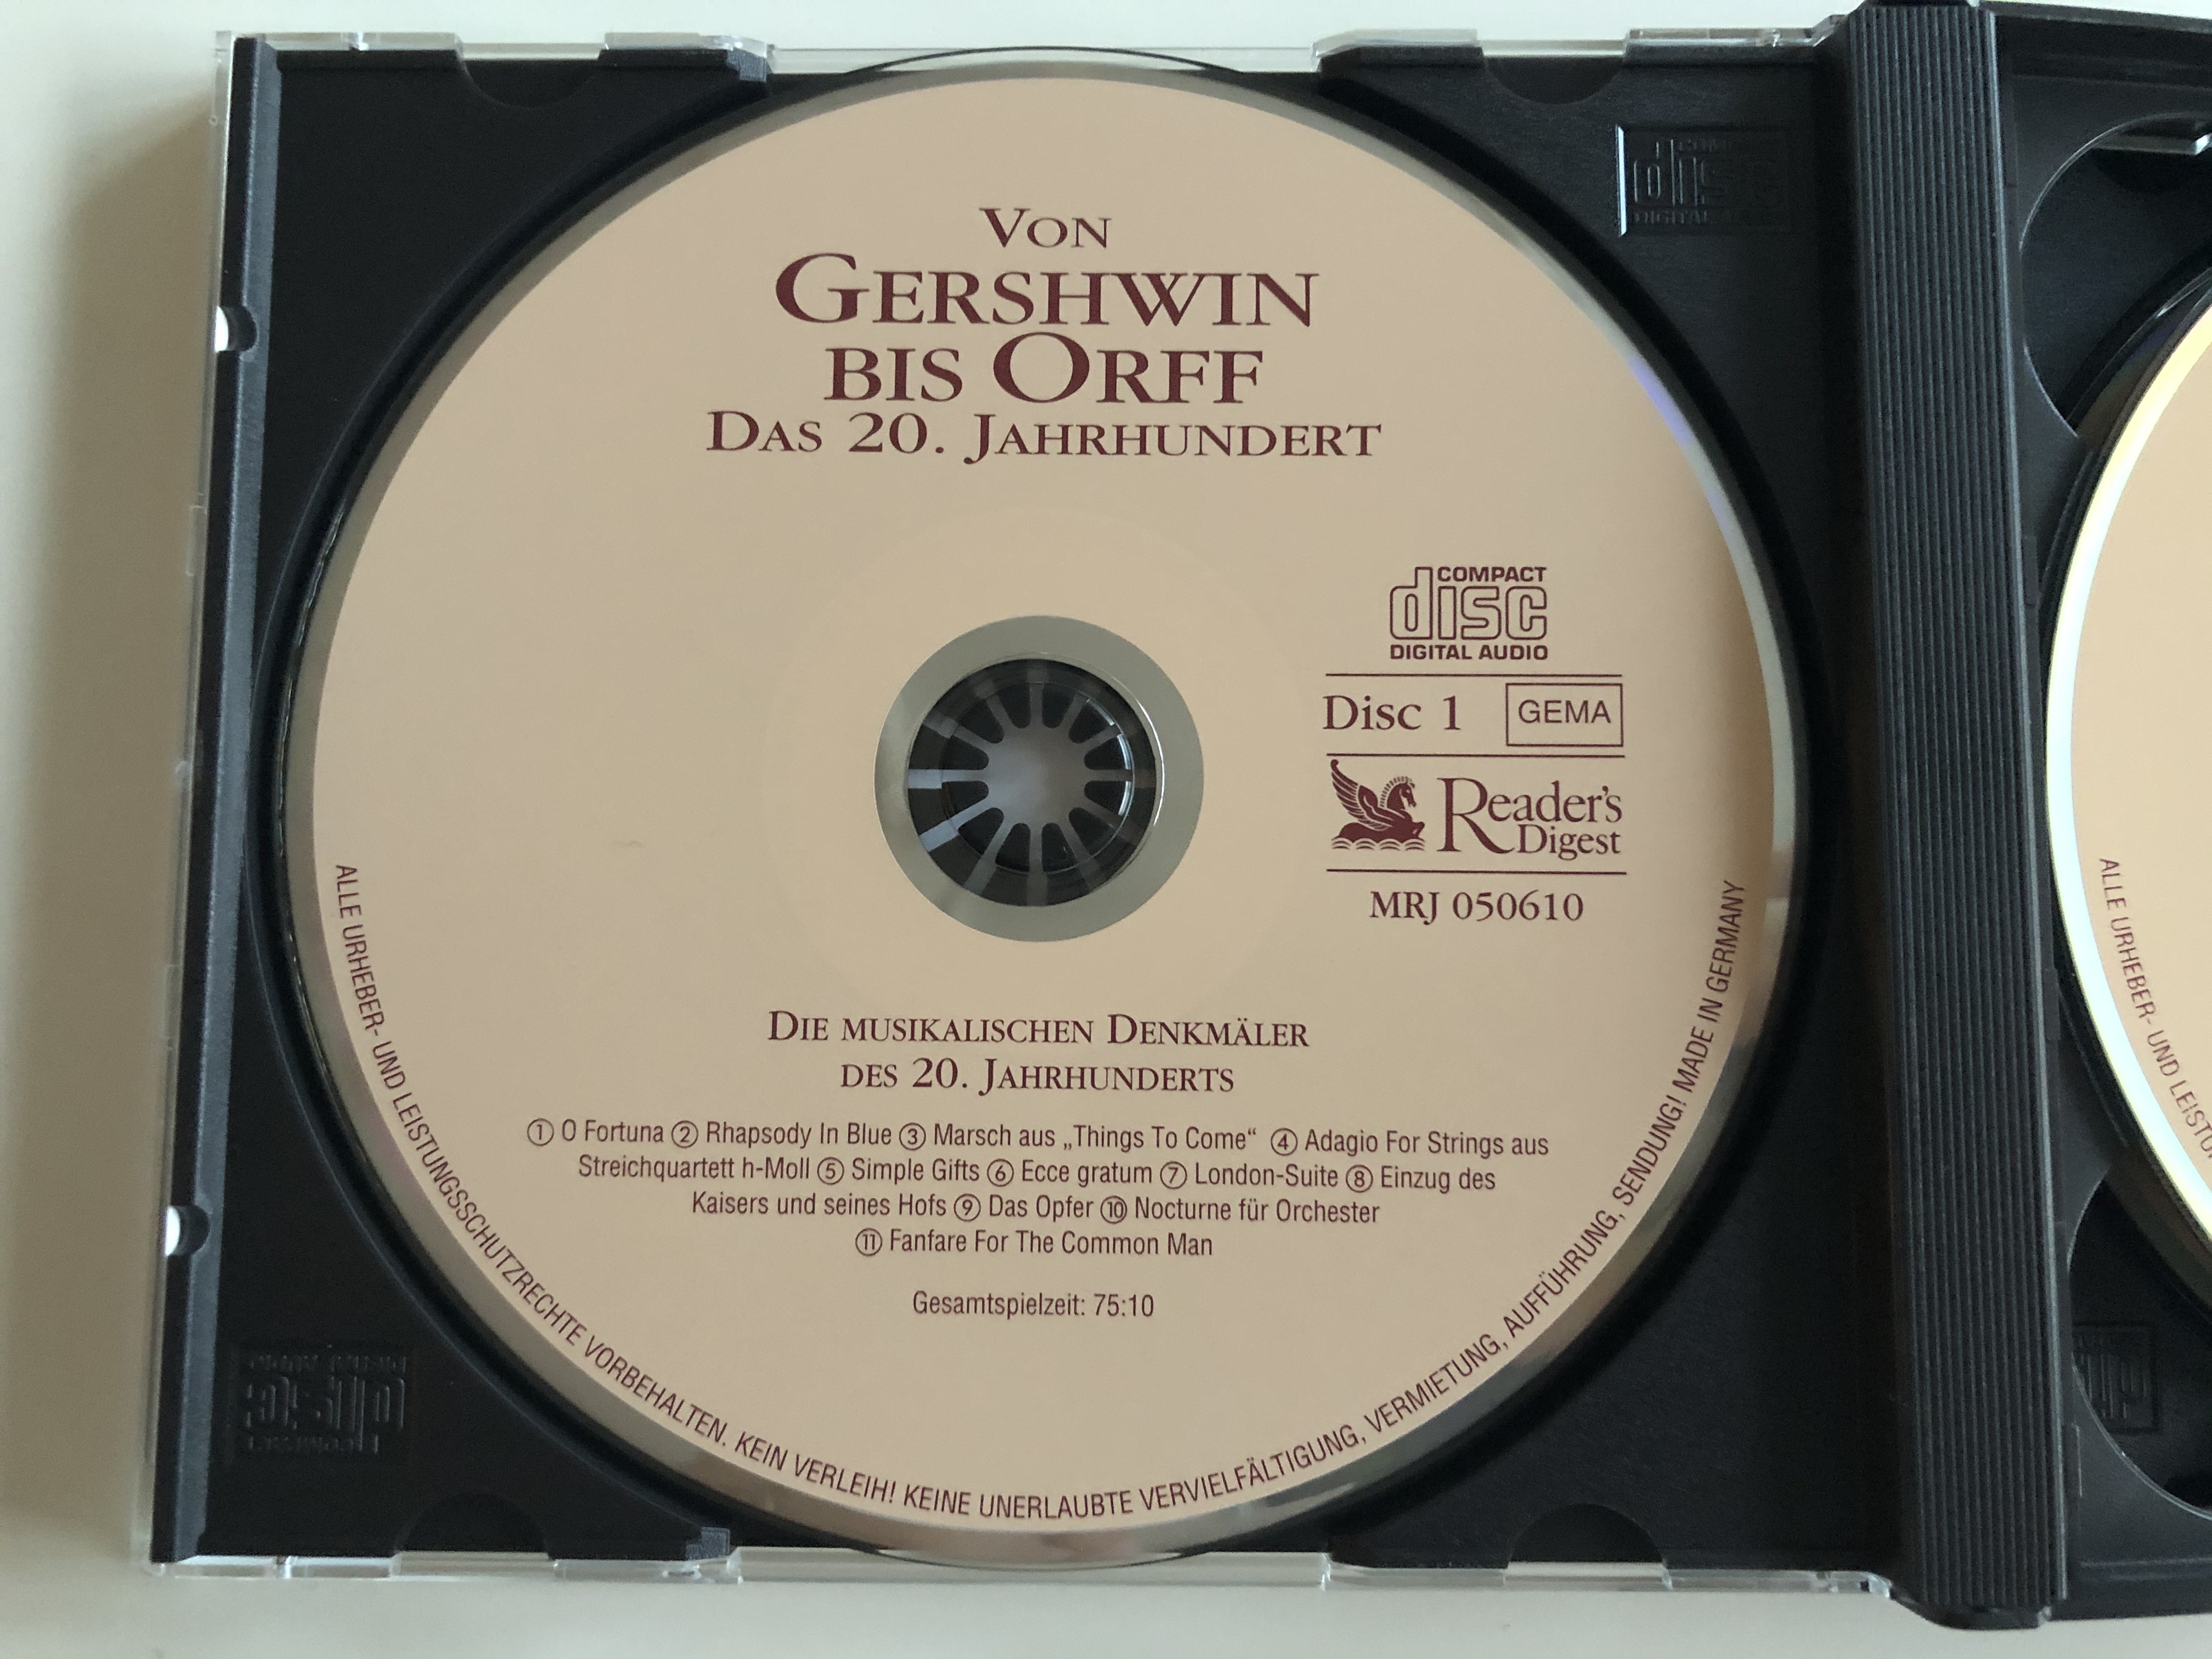 von-gershwin-bis-orff-das-20.-jahrhundert-musikalische-reise-durchs-jahrtausend-reader-s-digest-box-set-3x-audio-cd-2001-mrj-050610-11-.jpg